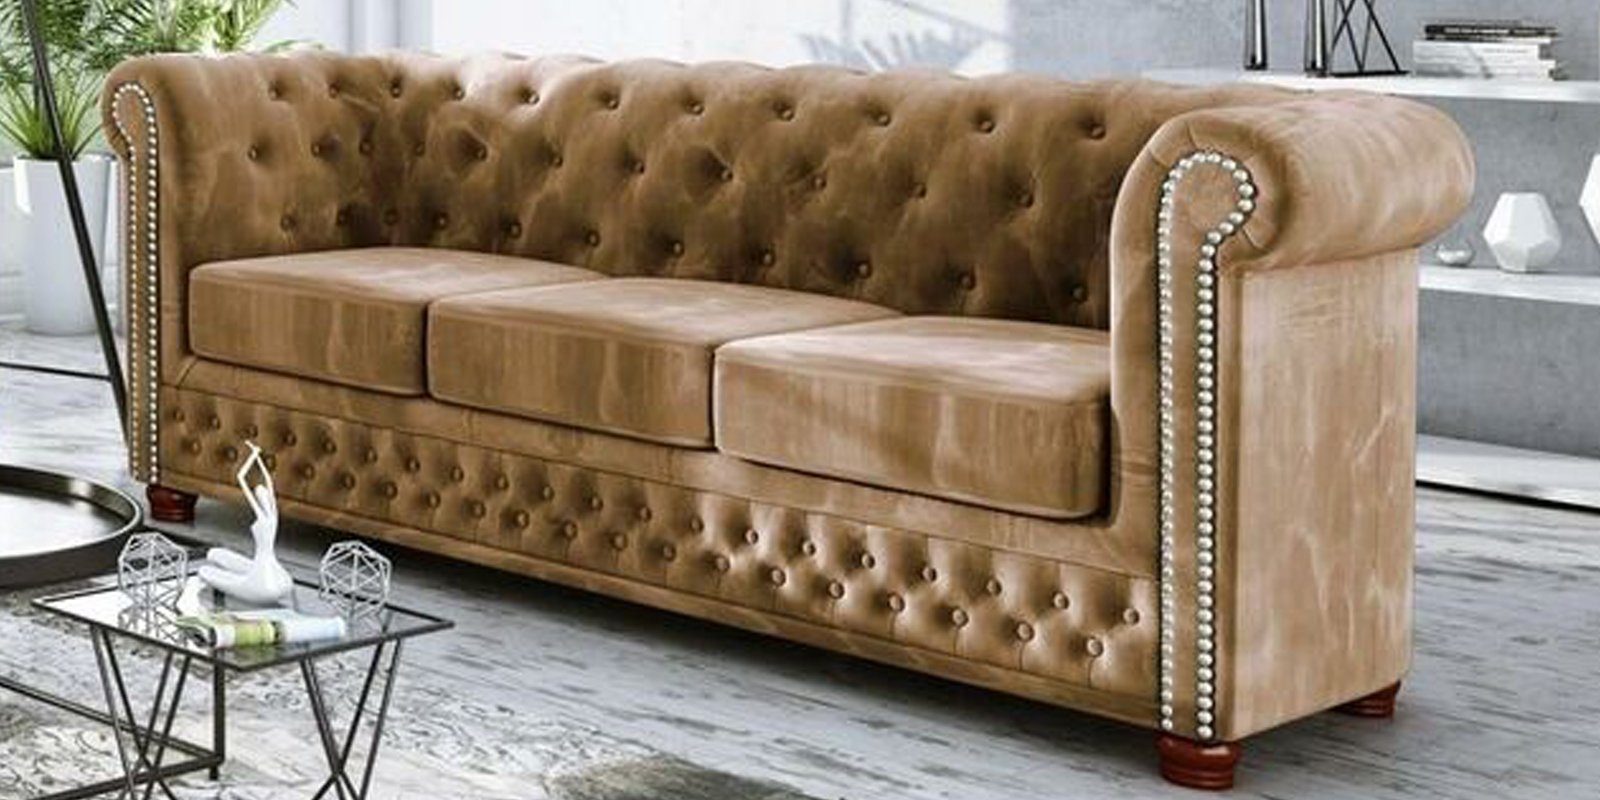 JVmoebel Sofa Moderner Luxus Dreisitzer Chesterfield Möbel Edles Design 3-Sitzer, Made in Europe